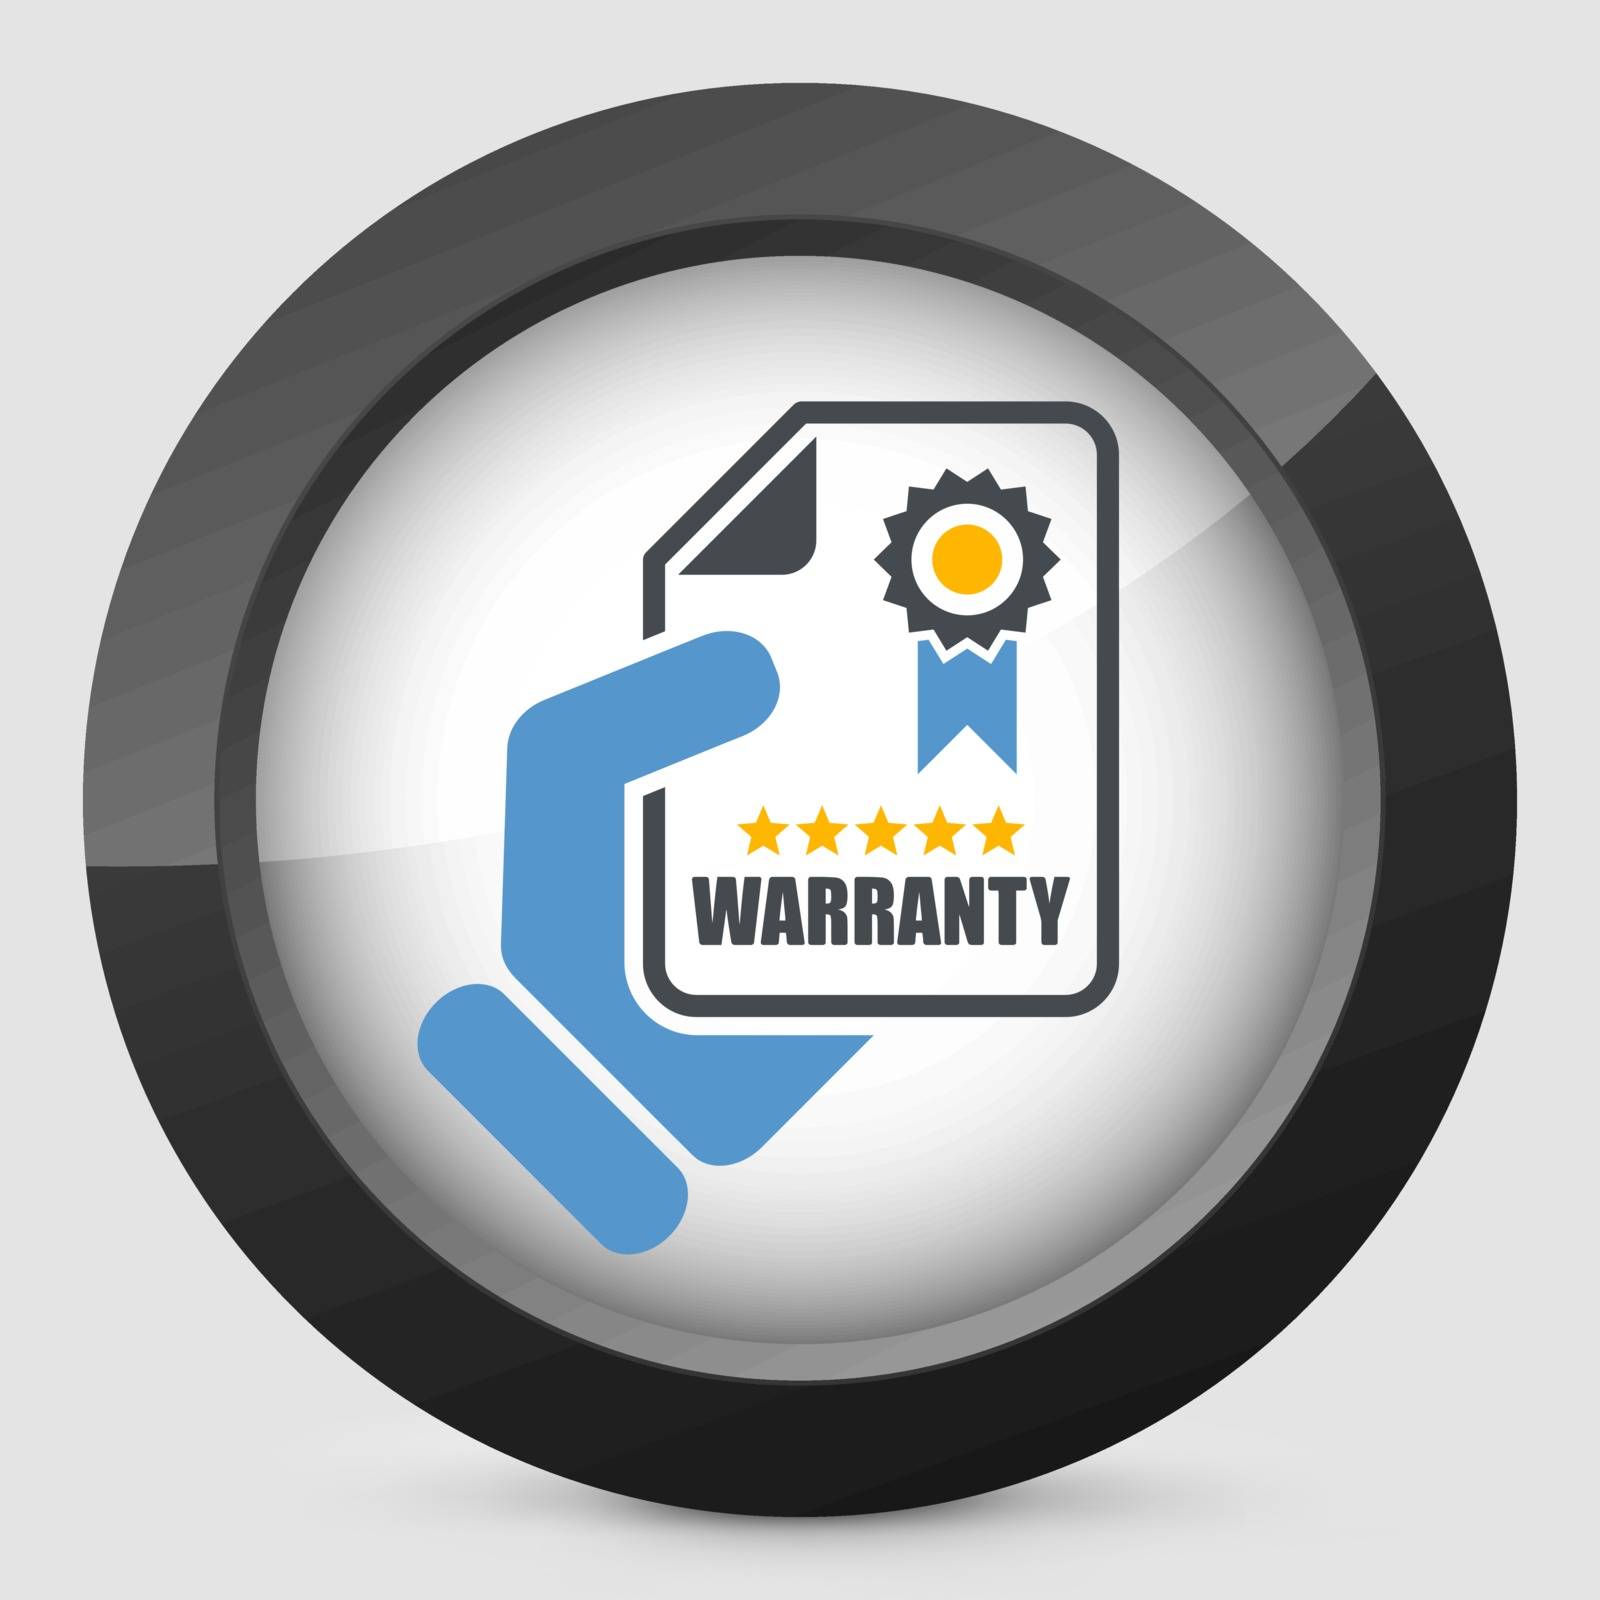 Warranty icon by myVector